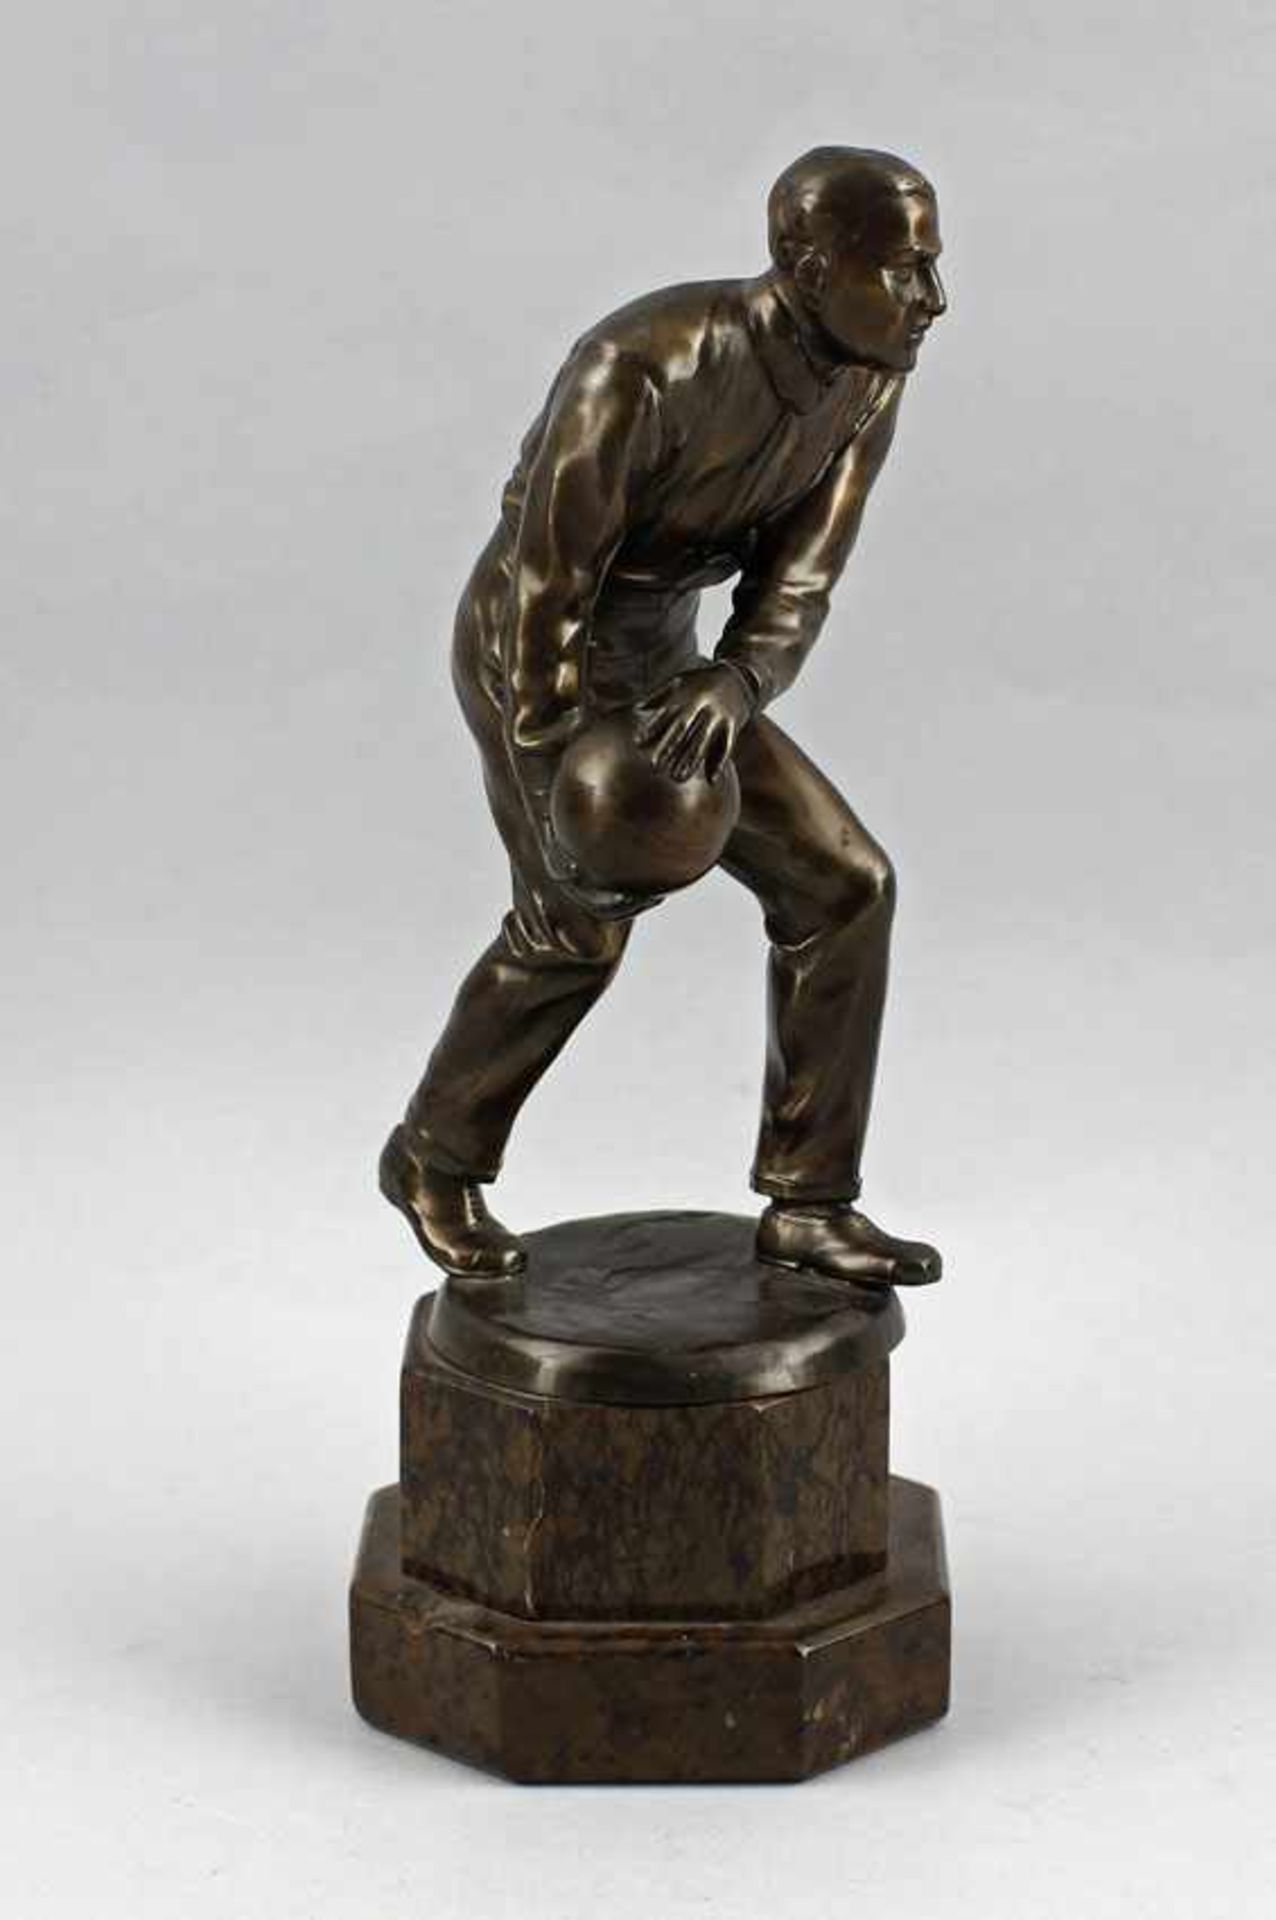 Unbekannt, Bronzefigur Kegler unsigniert, Bronze poliert, detailgetreue Ausformung eines